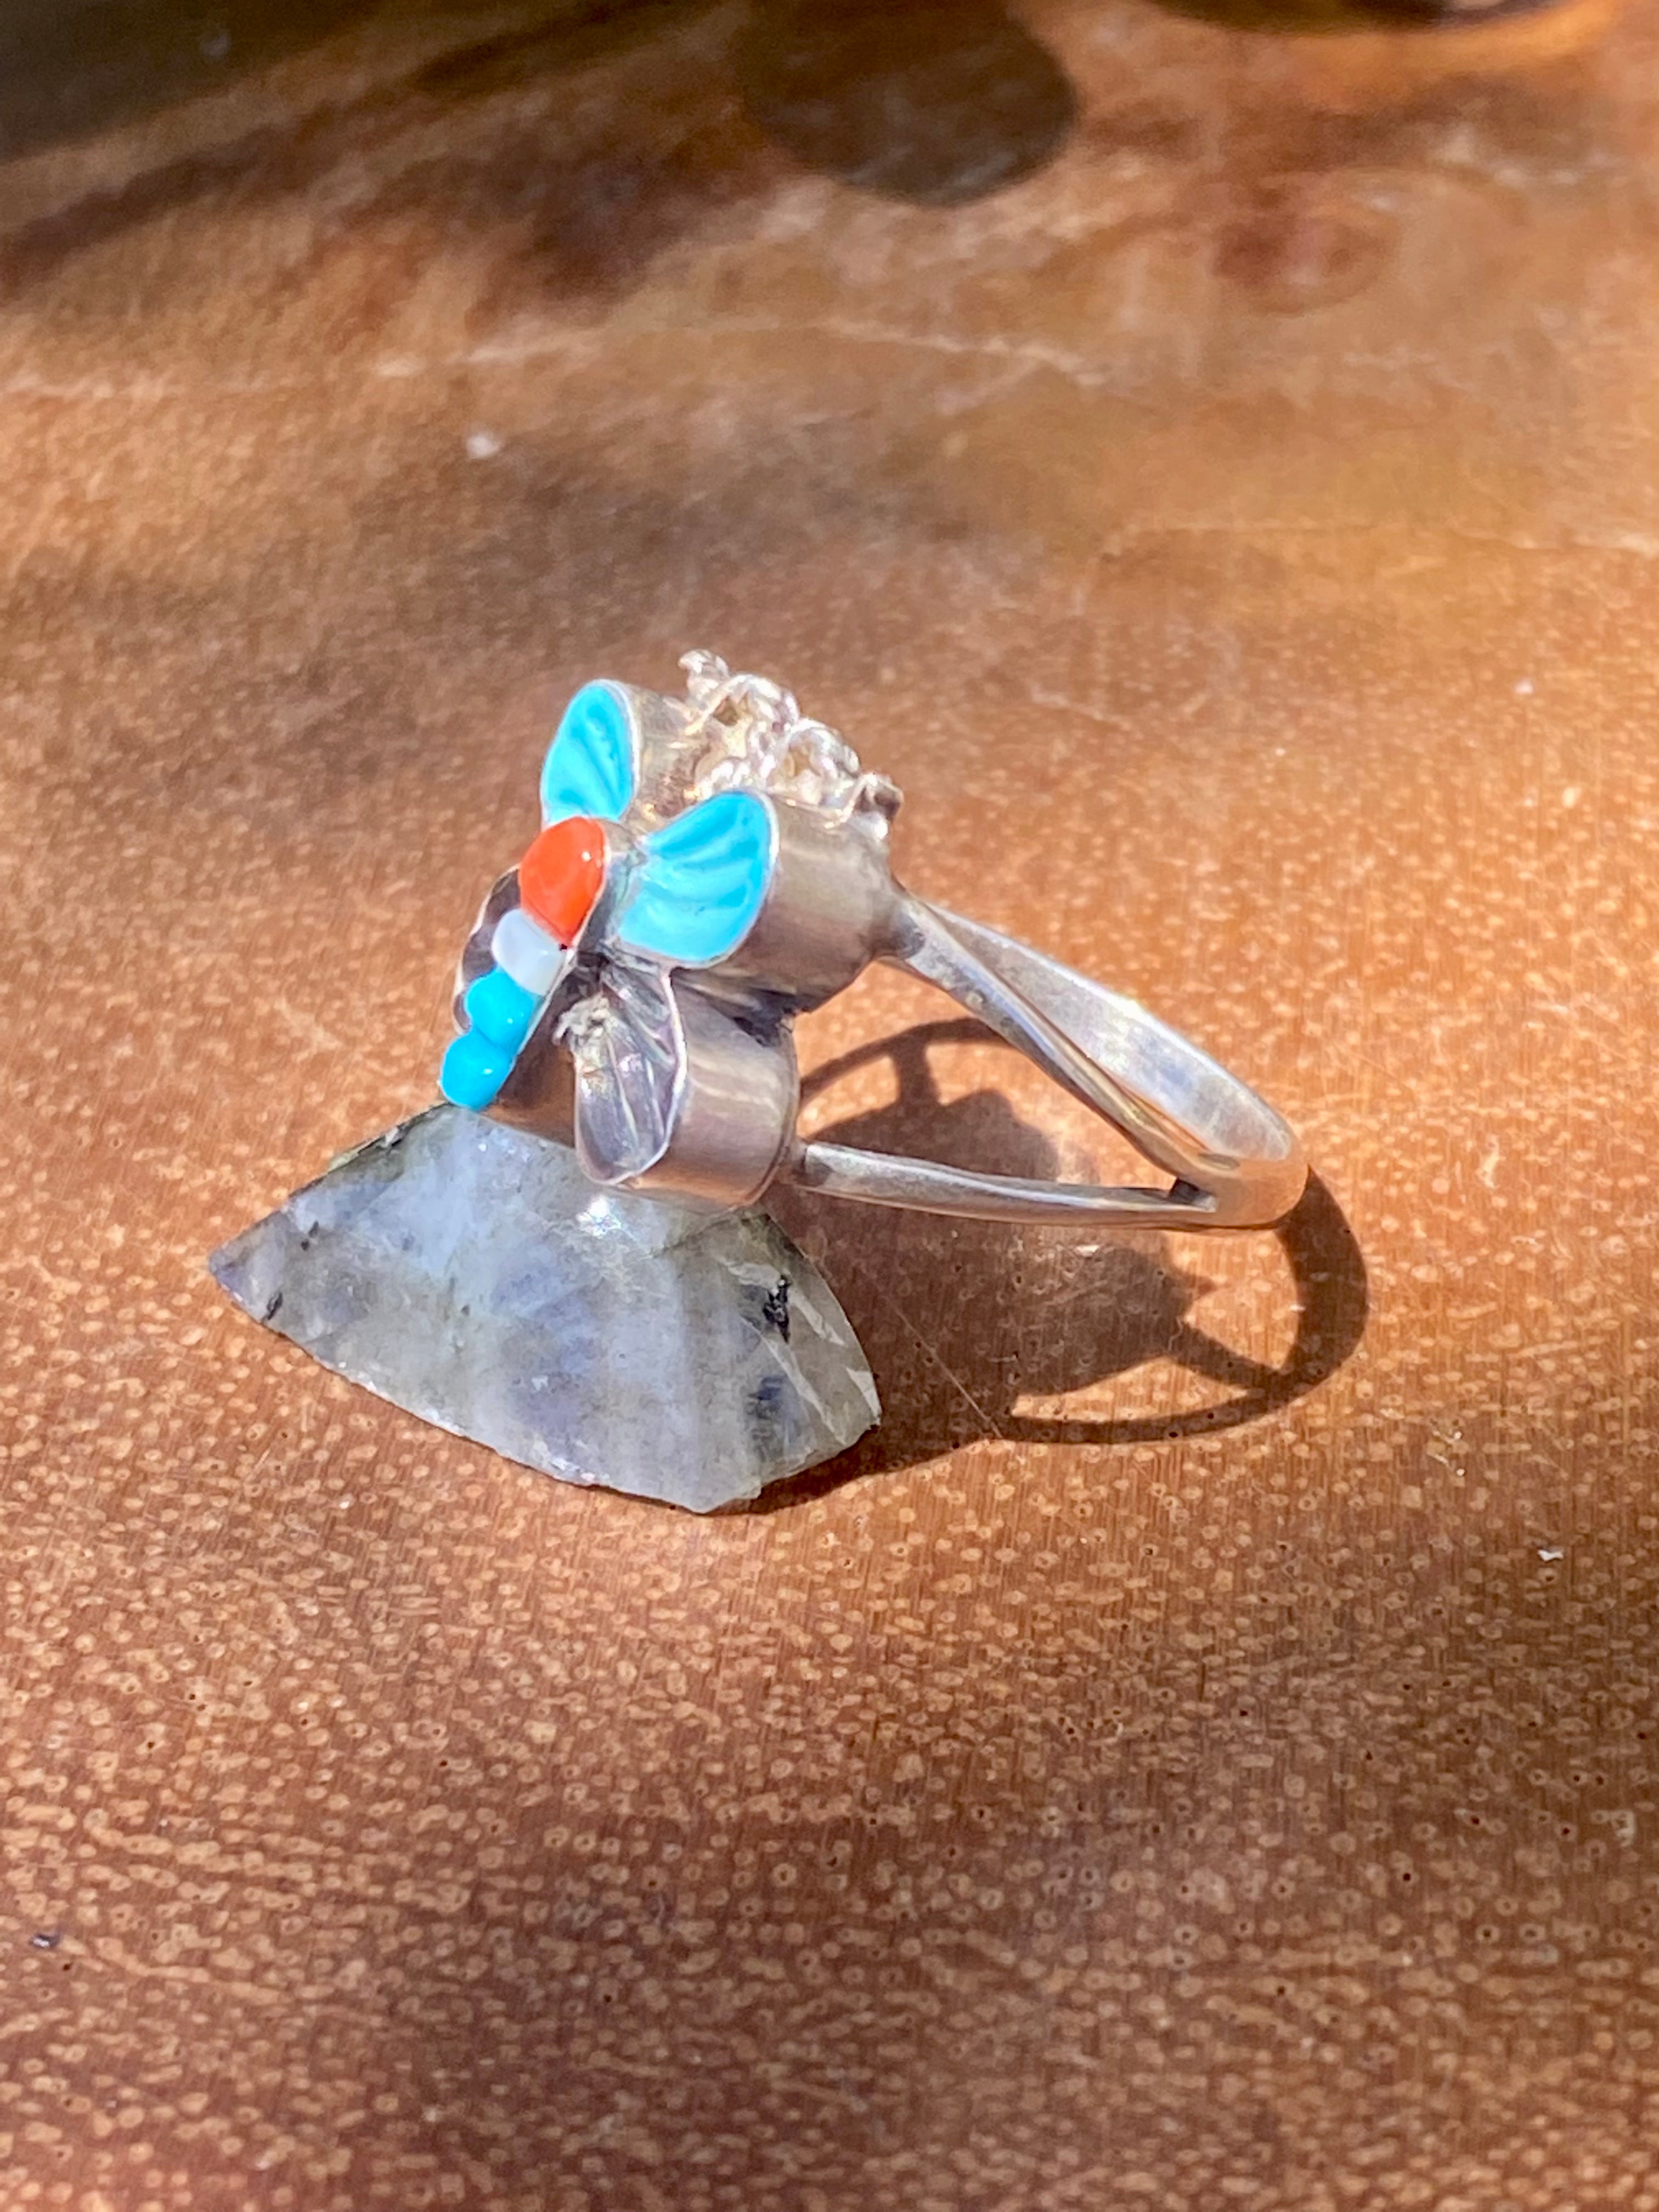 Steve Lonjose Zuni Multi Stone & Sterling Silver Butterfly Necklace Set